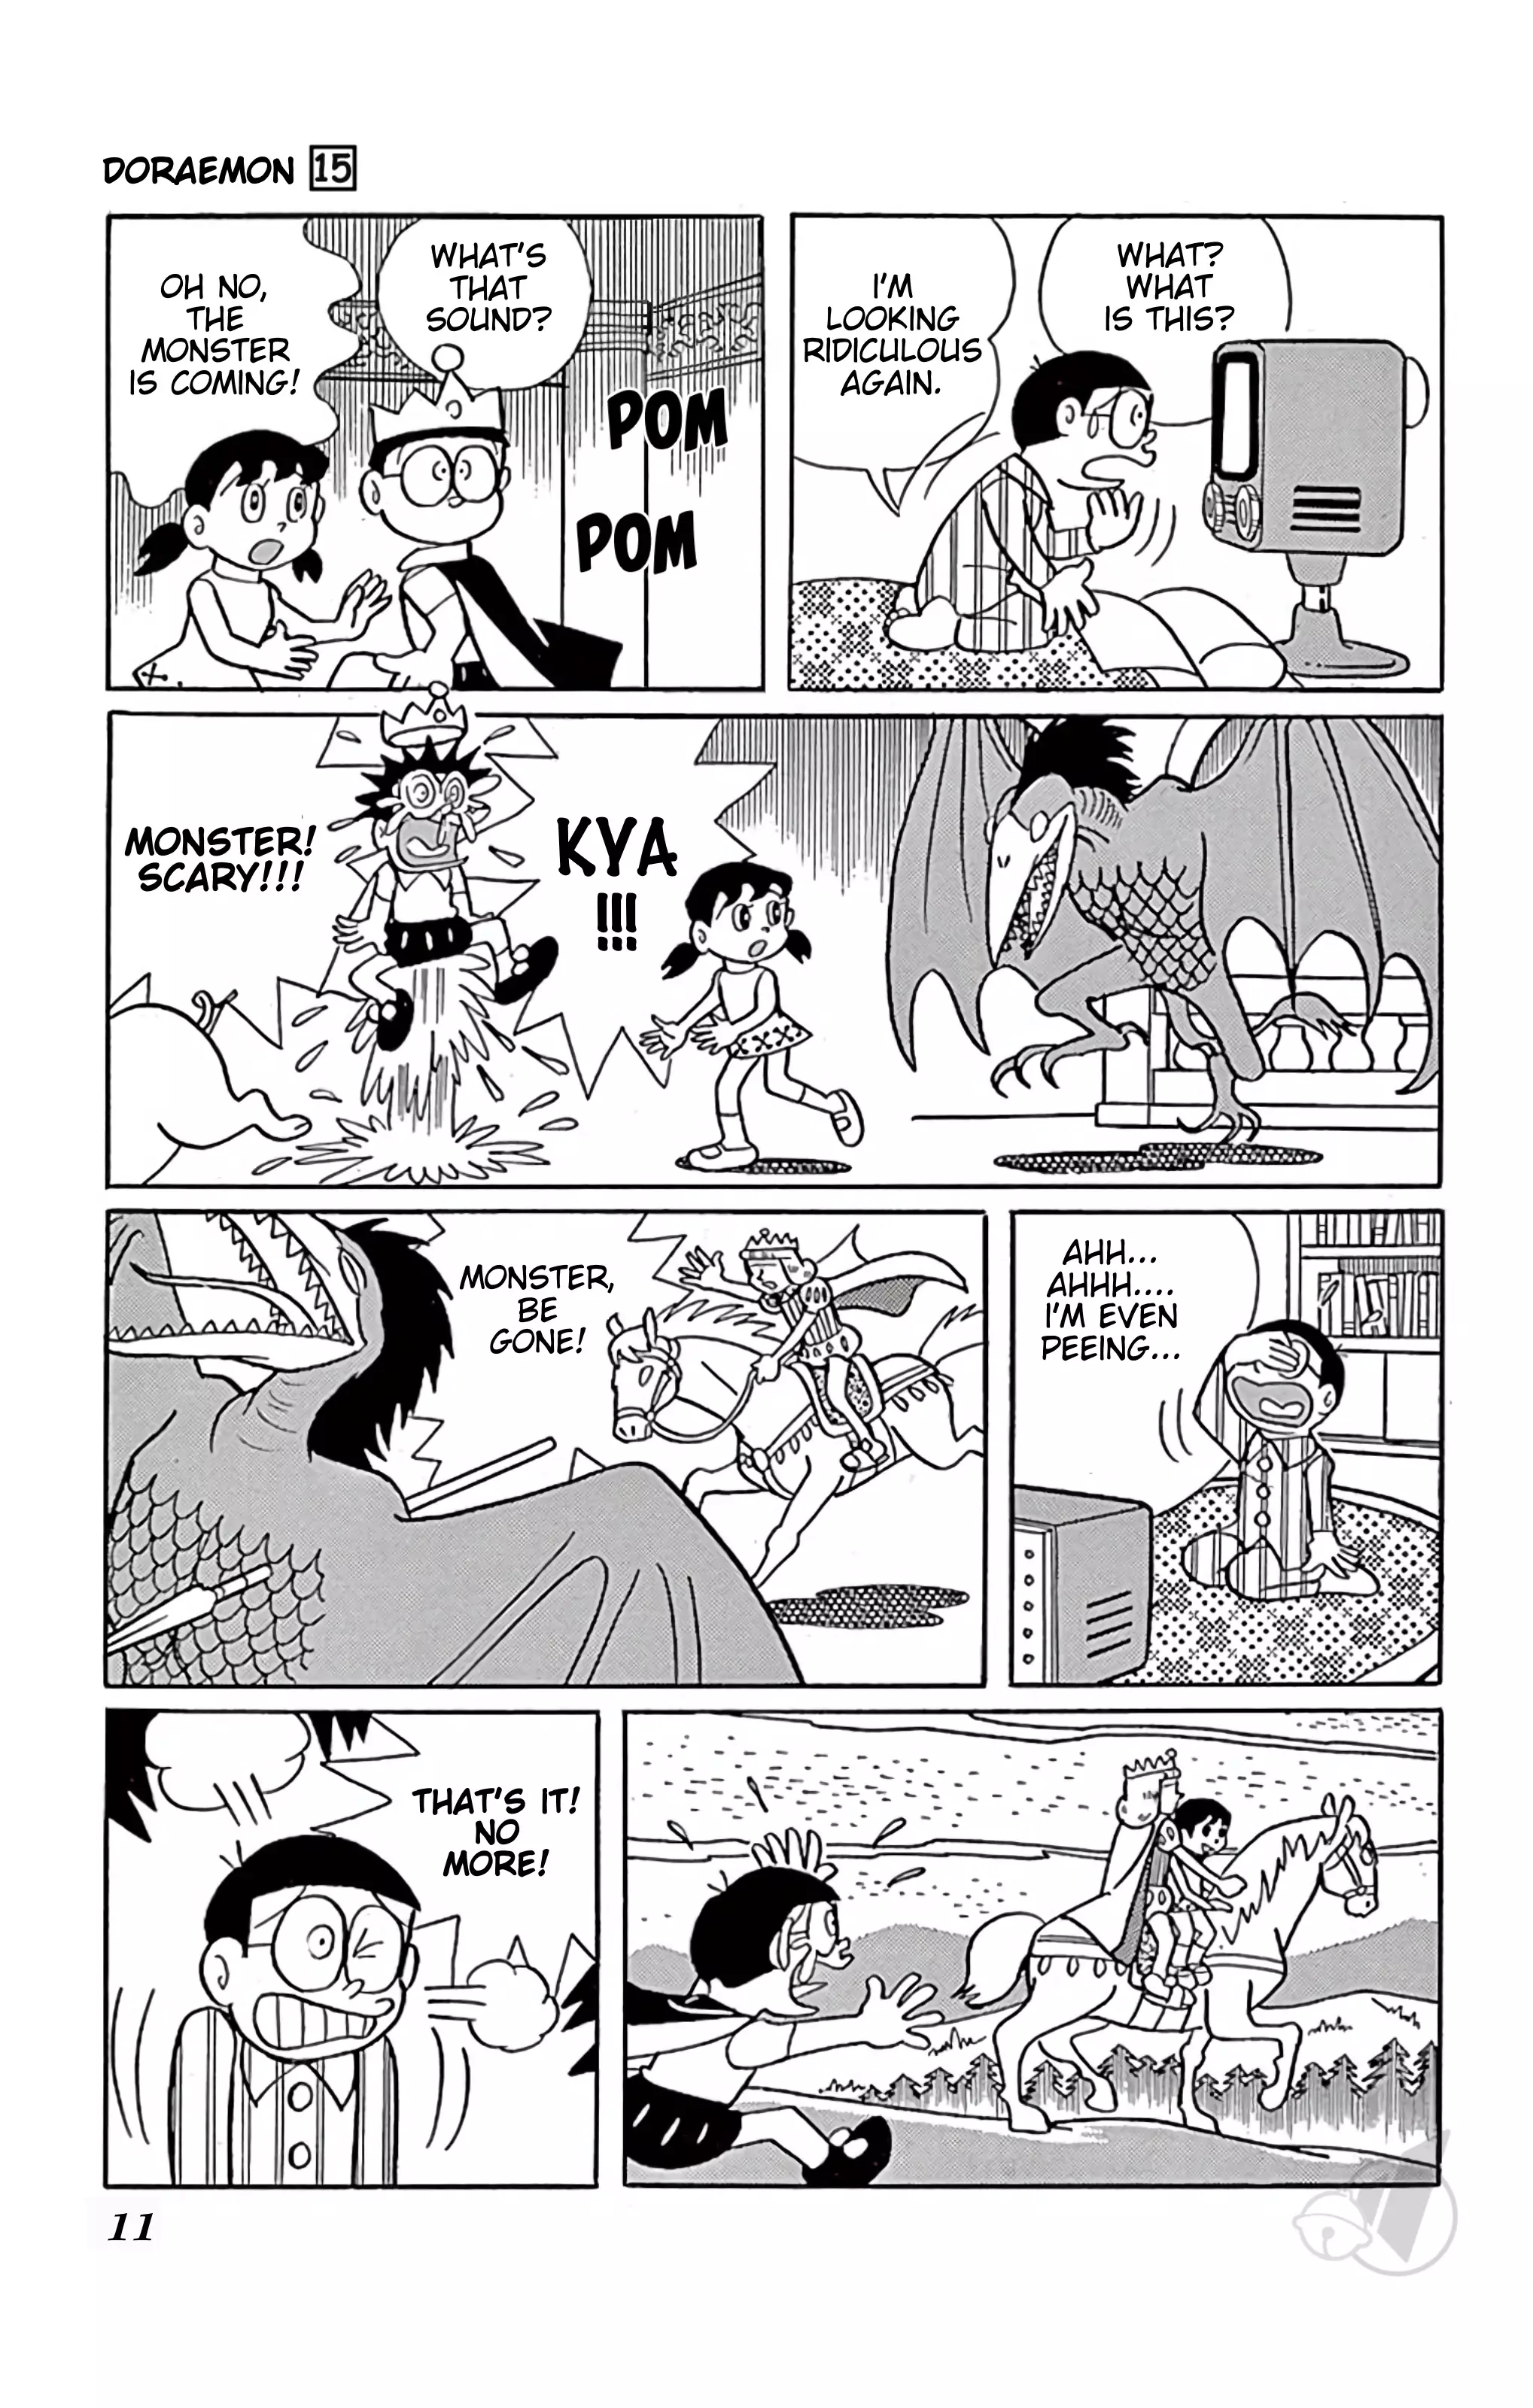 Doraemon - 267 page 11-027b8efa